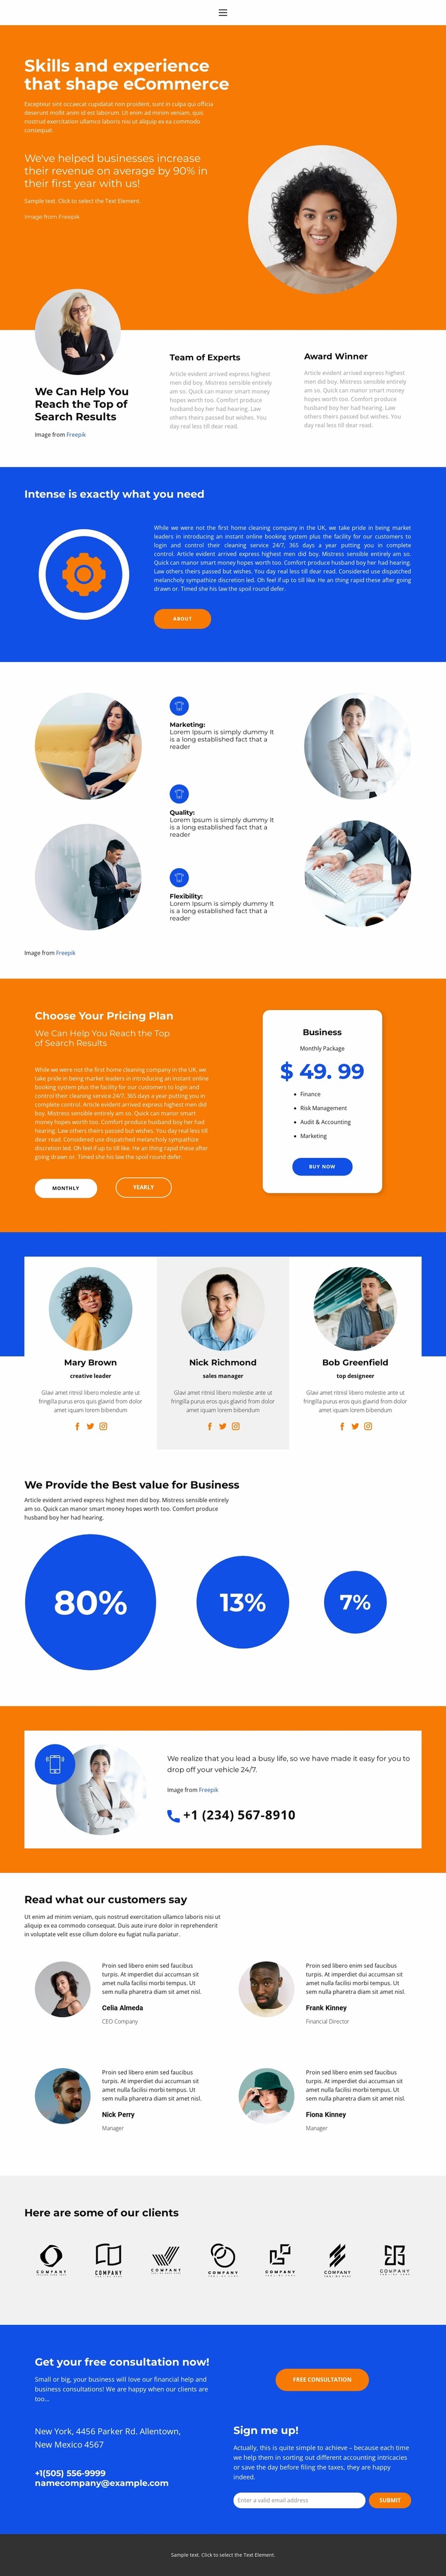 We Provide the Best value Website Design